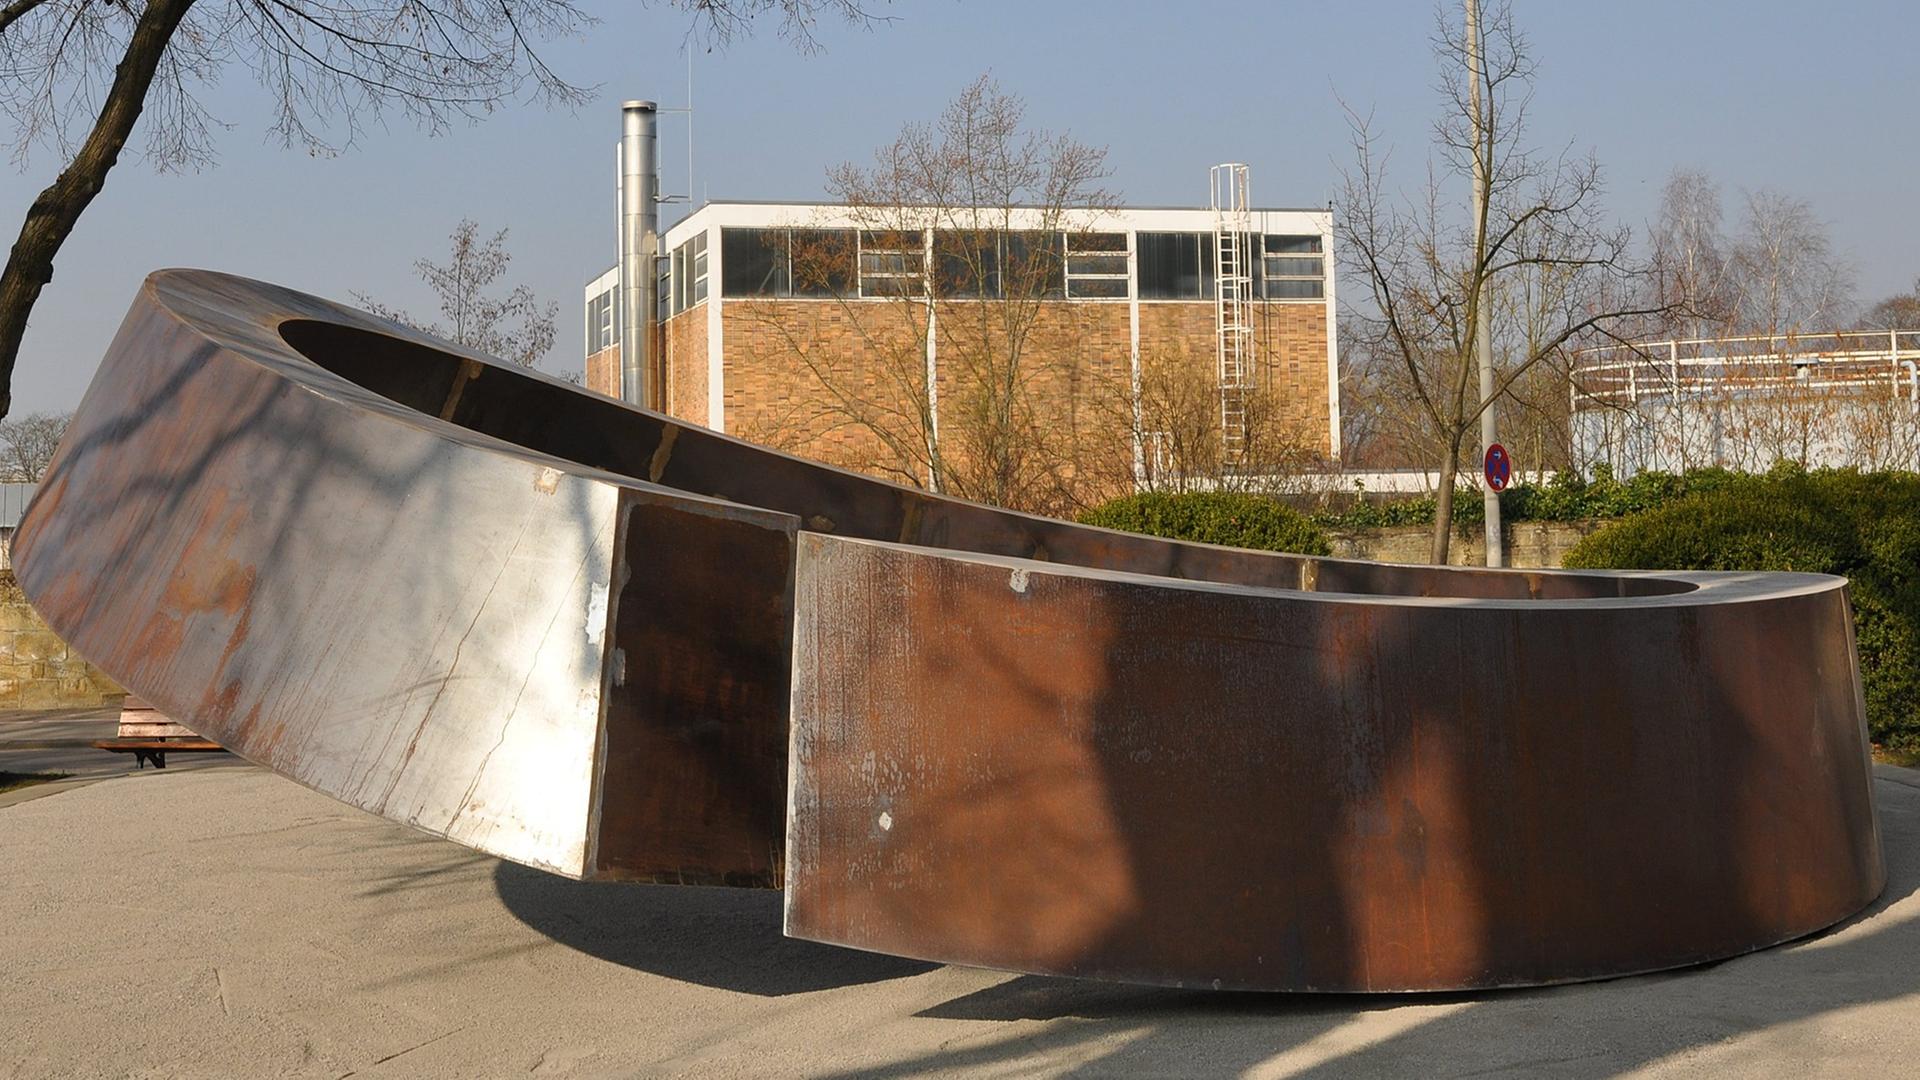 Gedenkstätte in Form einer geschwungenen, ringförmigen Skulptur für die Opfer des Amoklaufs in Winnenden vom 11. März 2009.